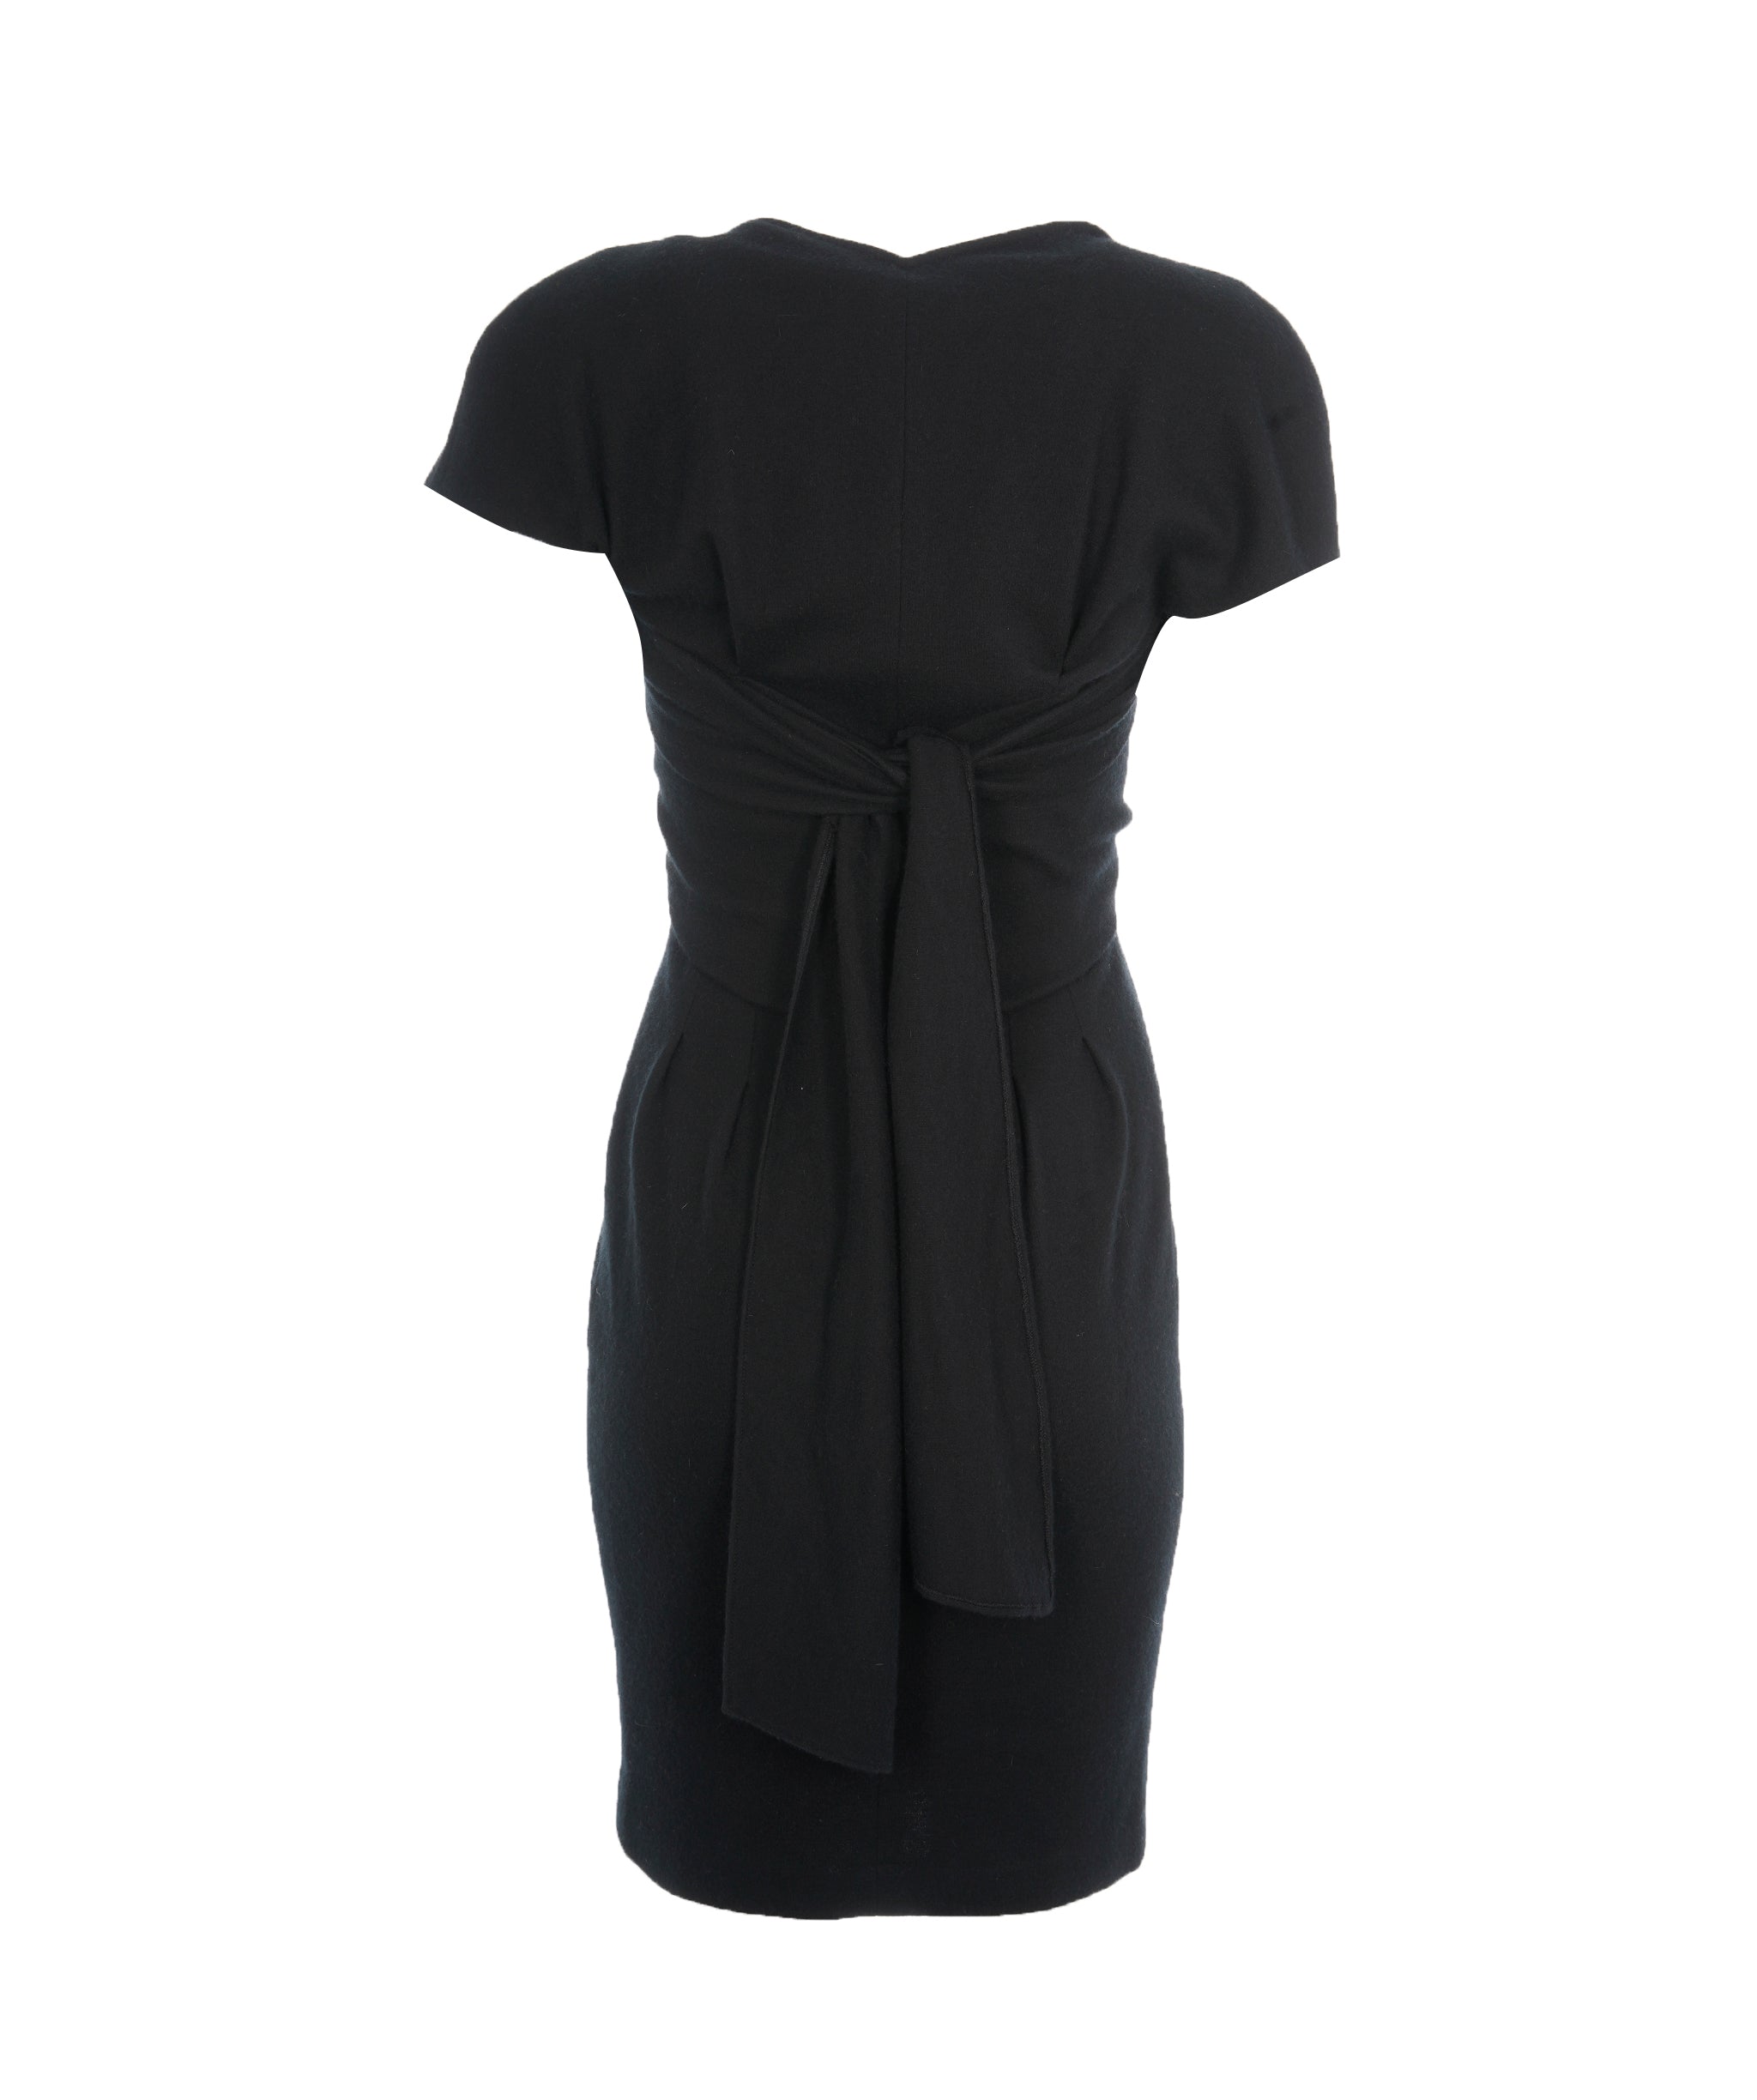 Chanel Chanel black cashmere dress ASL2746